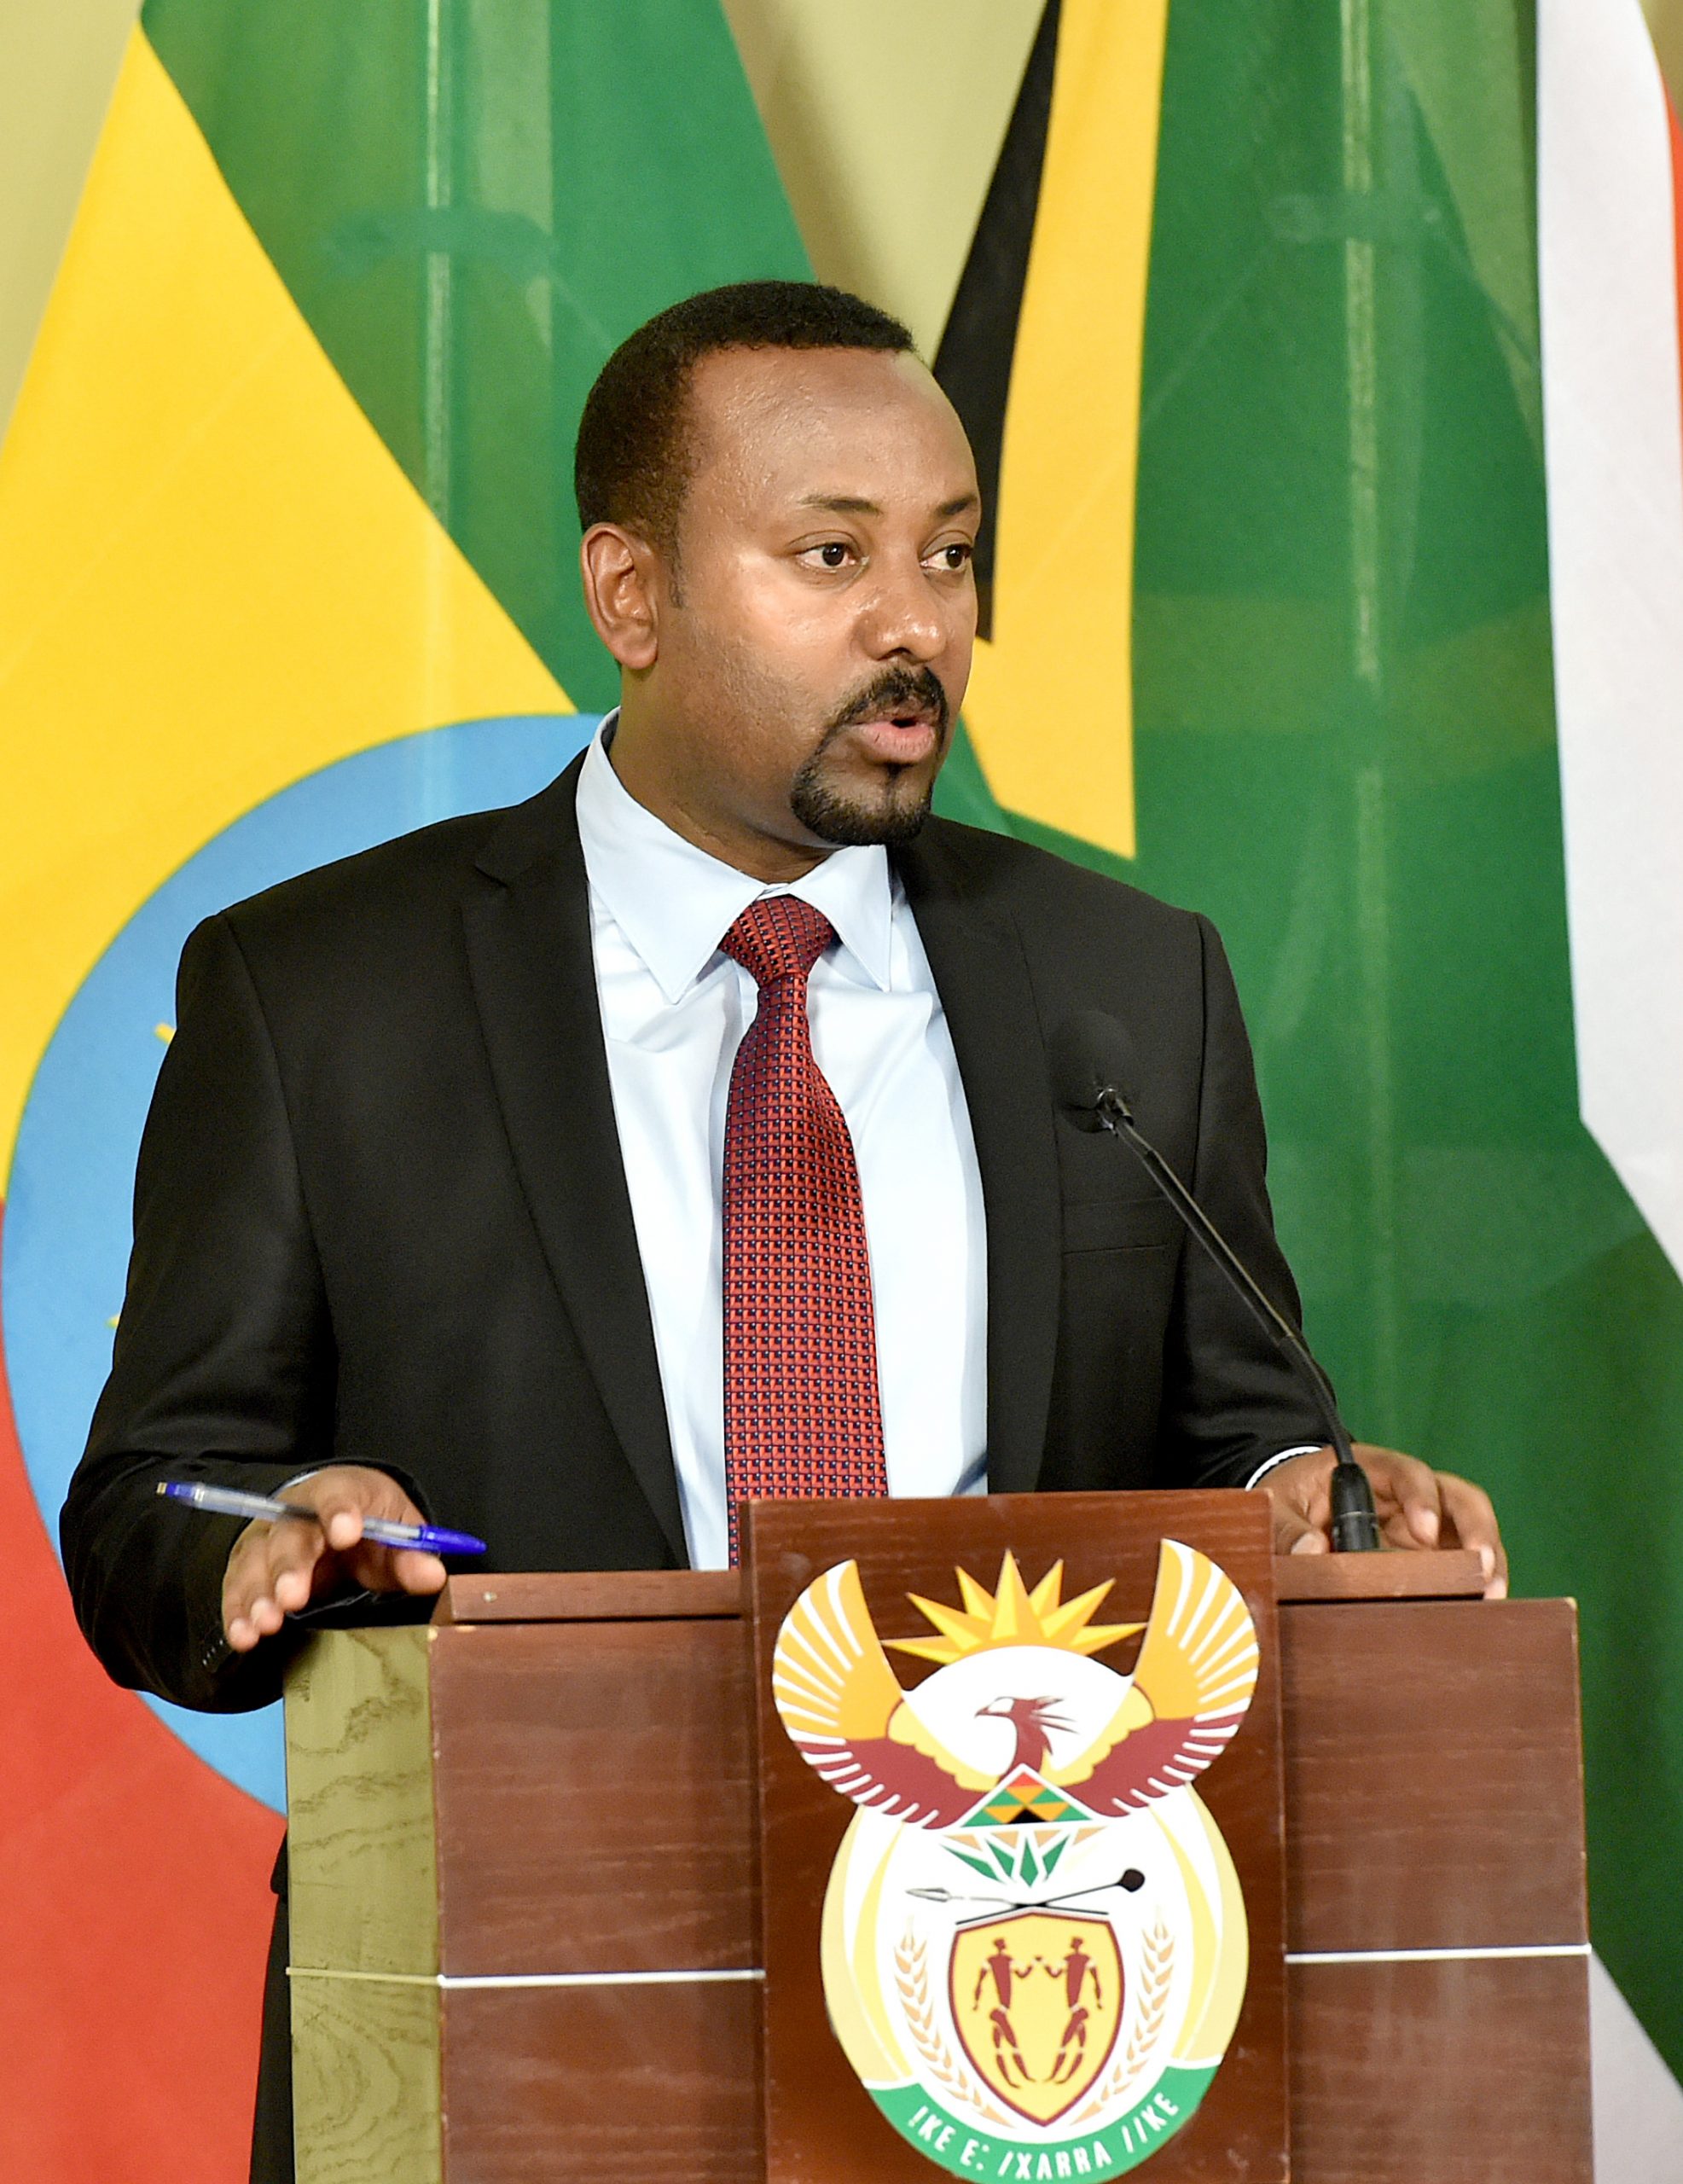 Etiopias statsminister Abiy Ahmed på talerstolen.